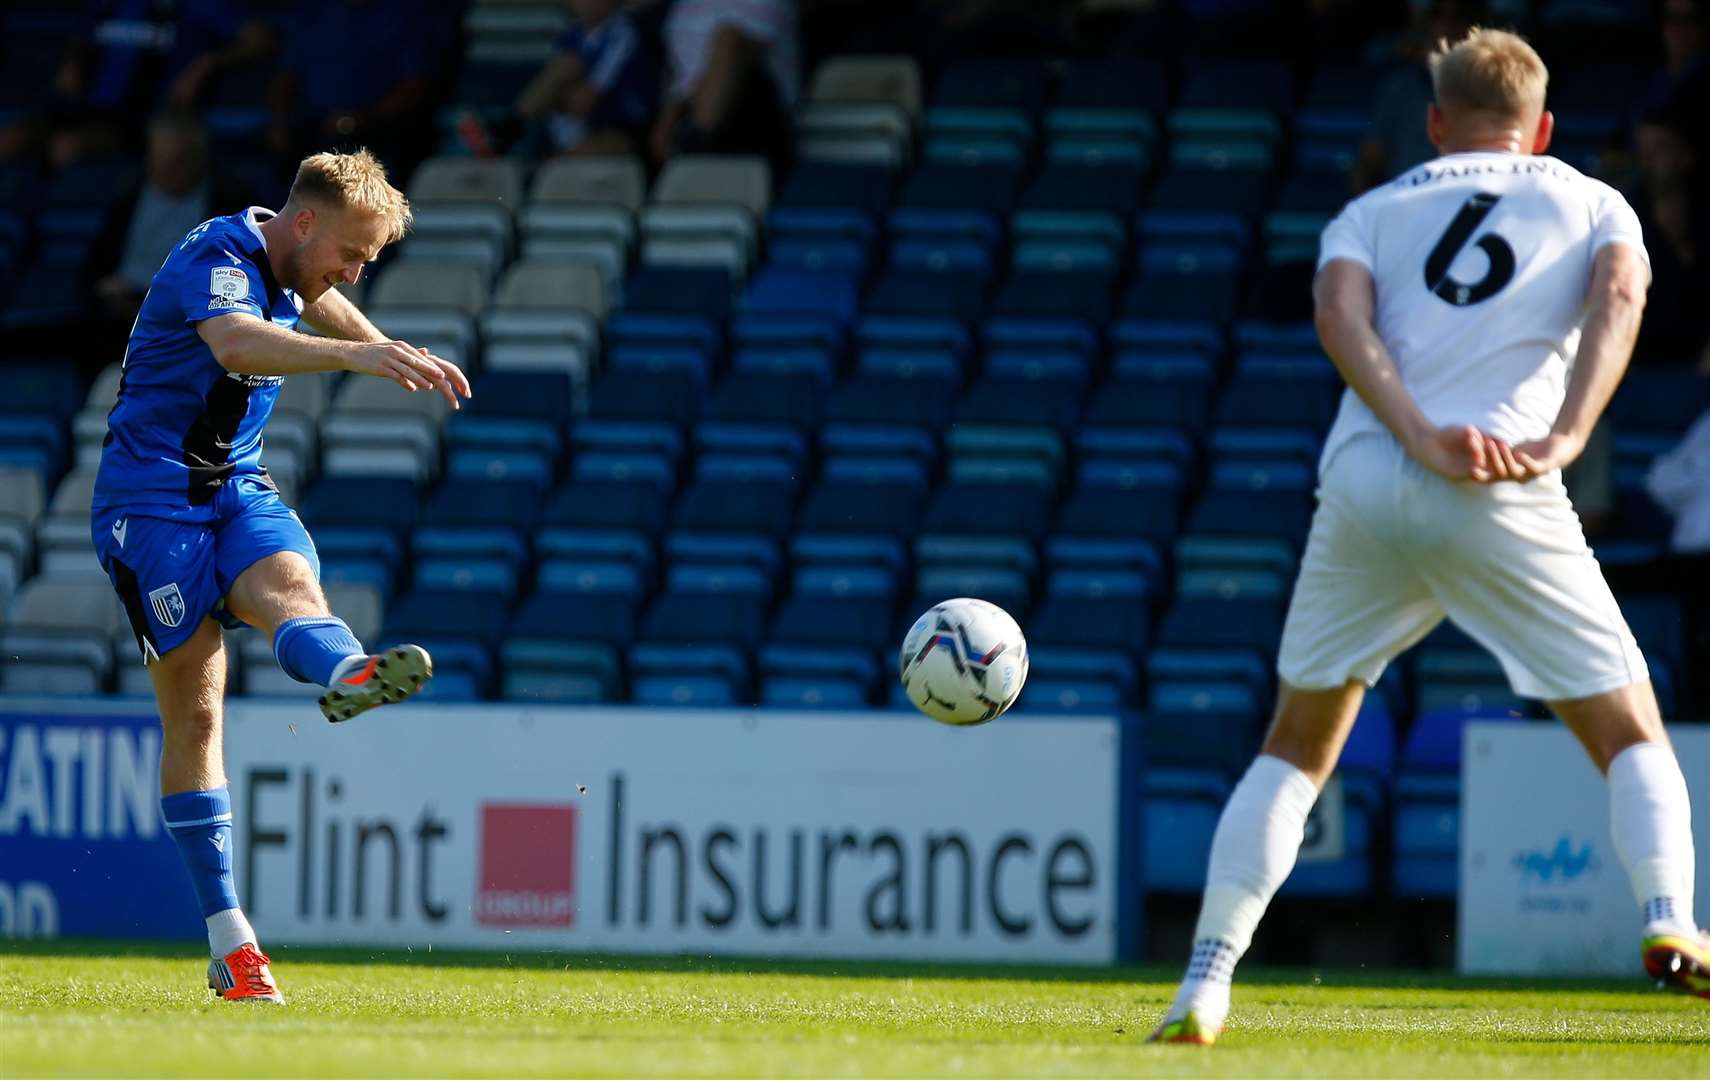 Gillingham midfielder Ben Reeves tries his luck. Picture: Andy Jones (51368785)